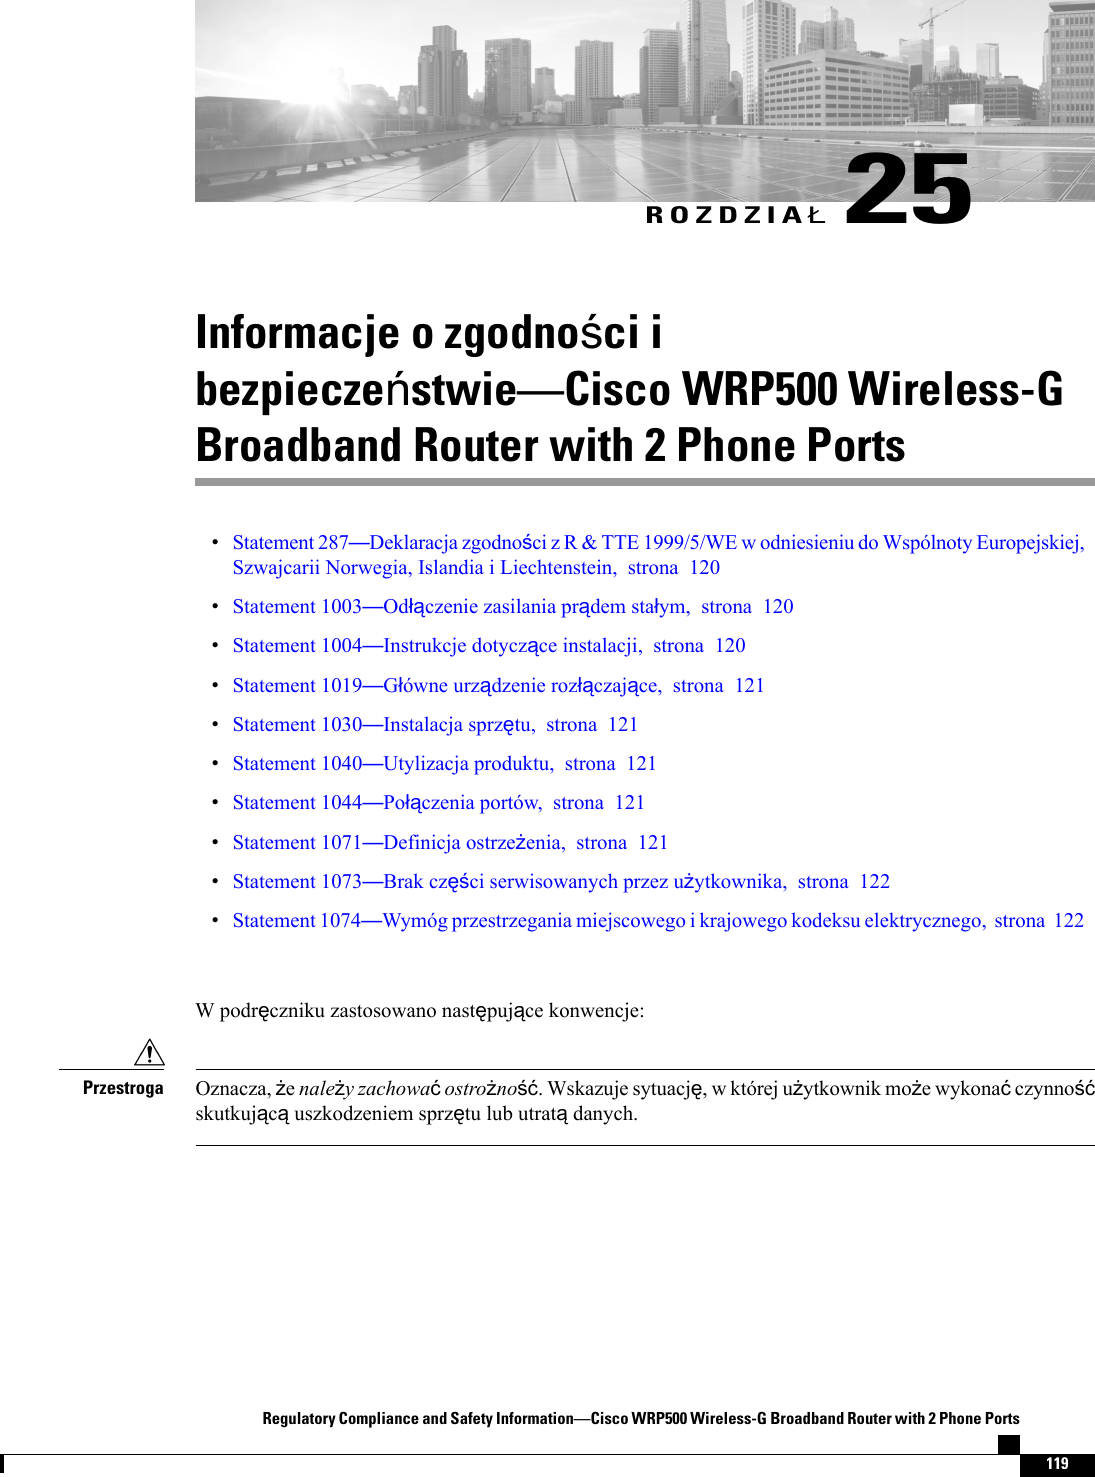 ROZDZIA25Informacje o zgodnoci ibezpieczestwieCisco WRP500 Wireless-GBroadband Router with 2 Phone PortsStatement 287Deklaracja zgodnoci z R &amp; TTE 1999/5/WE w odniesieniu do Wspólnoty Europejskiej,Szwajcarii Norwegia, Islandia i Liechtenstein, strona 120Statement 1003Odczenie zasilania prdem staym, strona 120Statement 1004Instrukcje dotyczce instalacji, strona 120Statement 1019Gówne urzdzenie rozczajce, strona 121Statement 1030Instalacja sprztu, strona 121Statement 1040Utylizacja produktu, strona 121Statement 1044Poczenia portów, strona 121Statement 1071Definicja ostrzeenia, strona 121Statement 1073Brak czci serwisowanych przez uytkownika, strona 122Statement 1074Wymóg przestrzegania miejscowego i krajowego kodeksu elektrycznego, strona 122W podrczniku zastosowano nastpujce konwencje:Oznacza, enaley zachowaostrono. Wskazuje sytuacj, w której uytkownik moe wykonaczynnoskutkujcuszkodzeniem sprztu lub utratdanych.PrzestrogaRegulatory Compliance and Safety InformationCisco WRP500 Wireless-G Broadband Router with 2 Phone Ports119